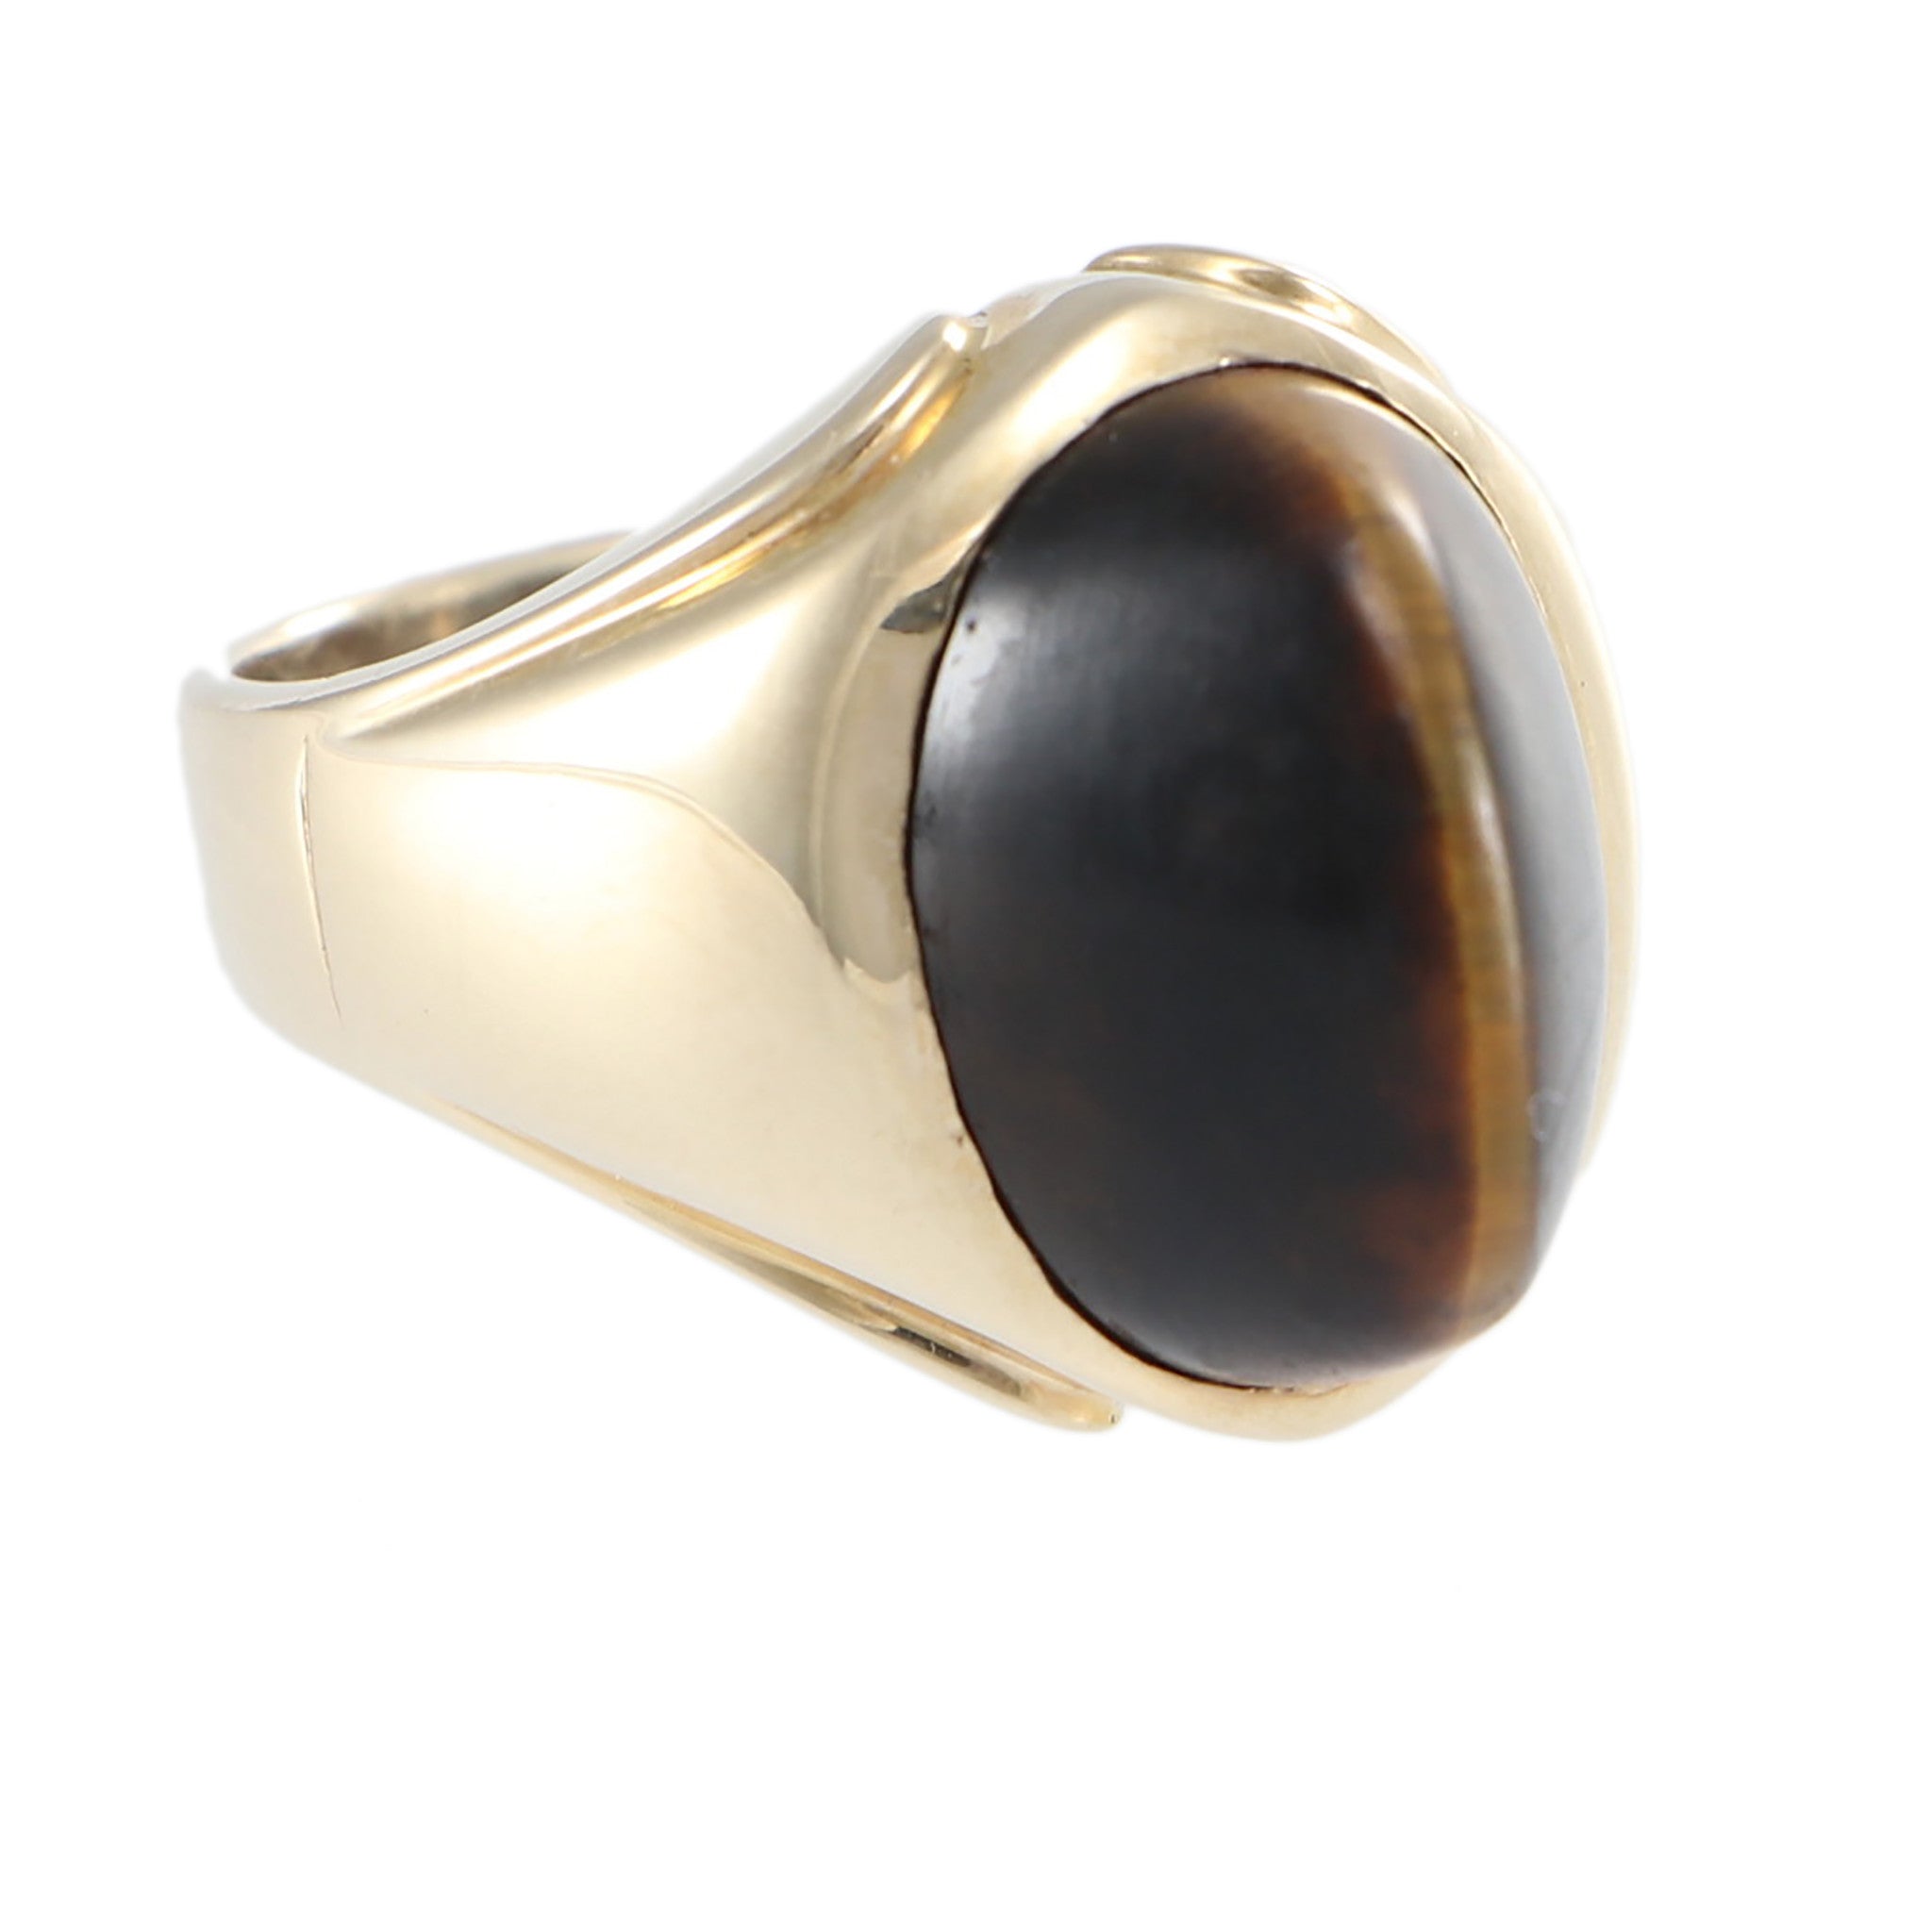 Buy SIDHARTH GEMS 12.25 Ratti 11.00 Carat Cat's Eye Lehsunia Stone Ring  Gold Adjustable Ring for Men at Amazon.in